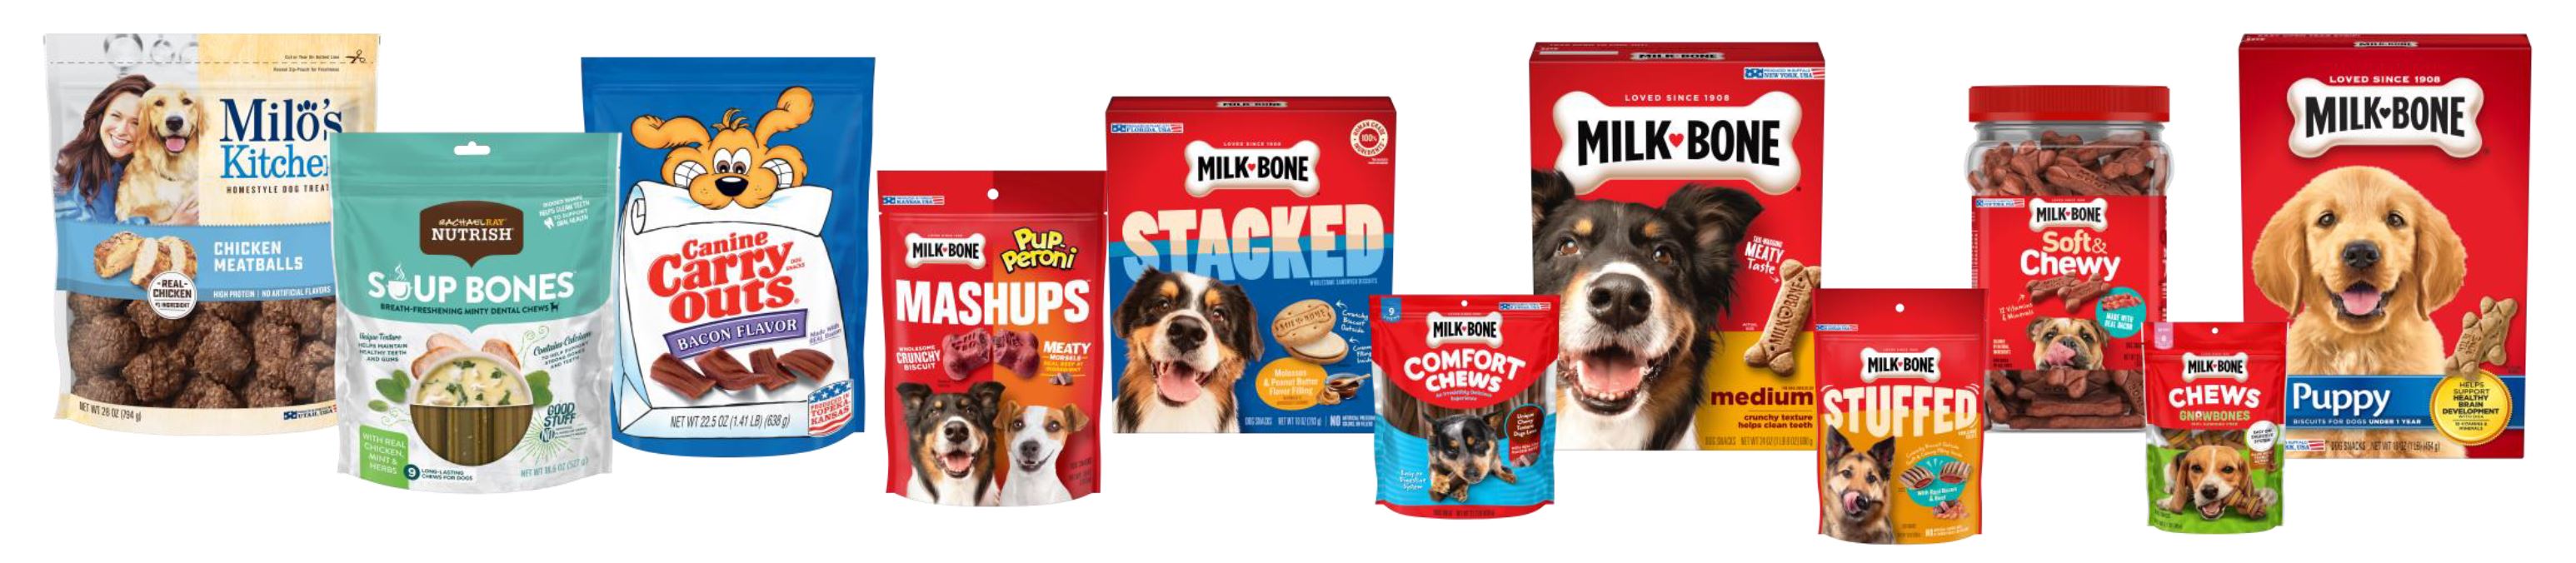 The J.M. Smucker Company's dog snack portfolio